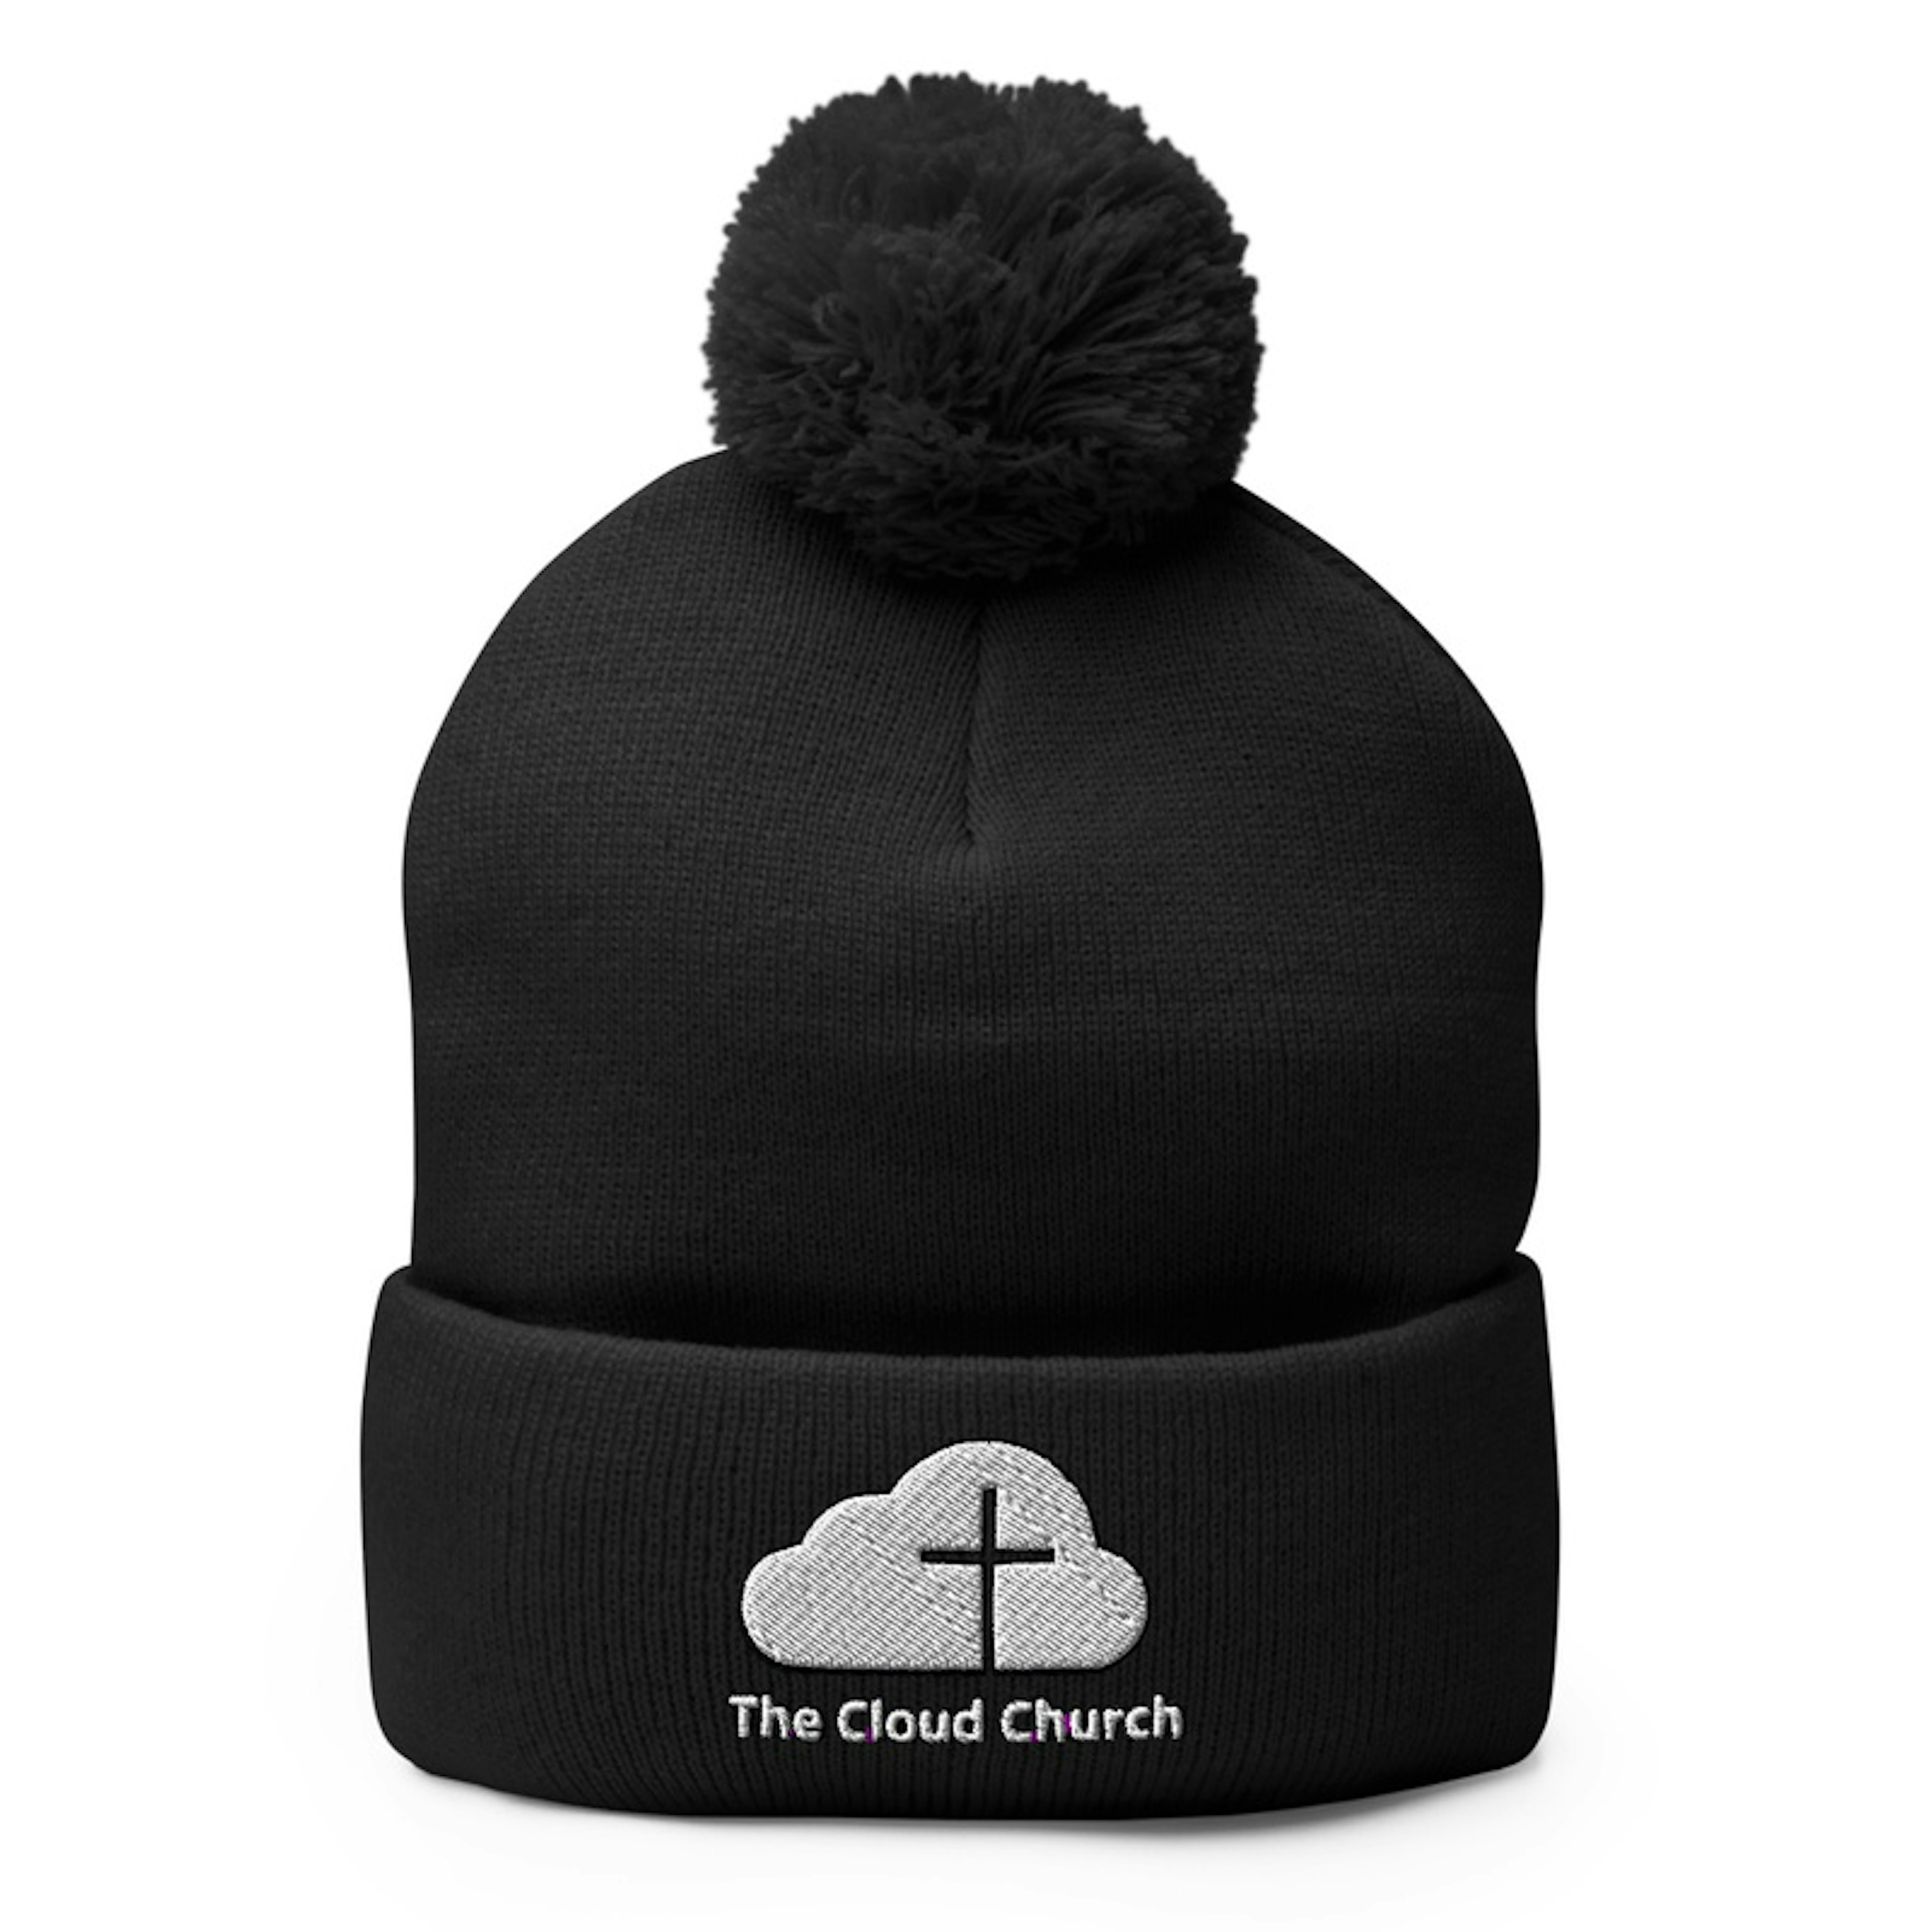 The Cloud Church Knit Cap 